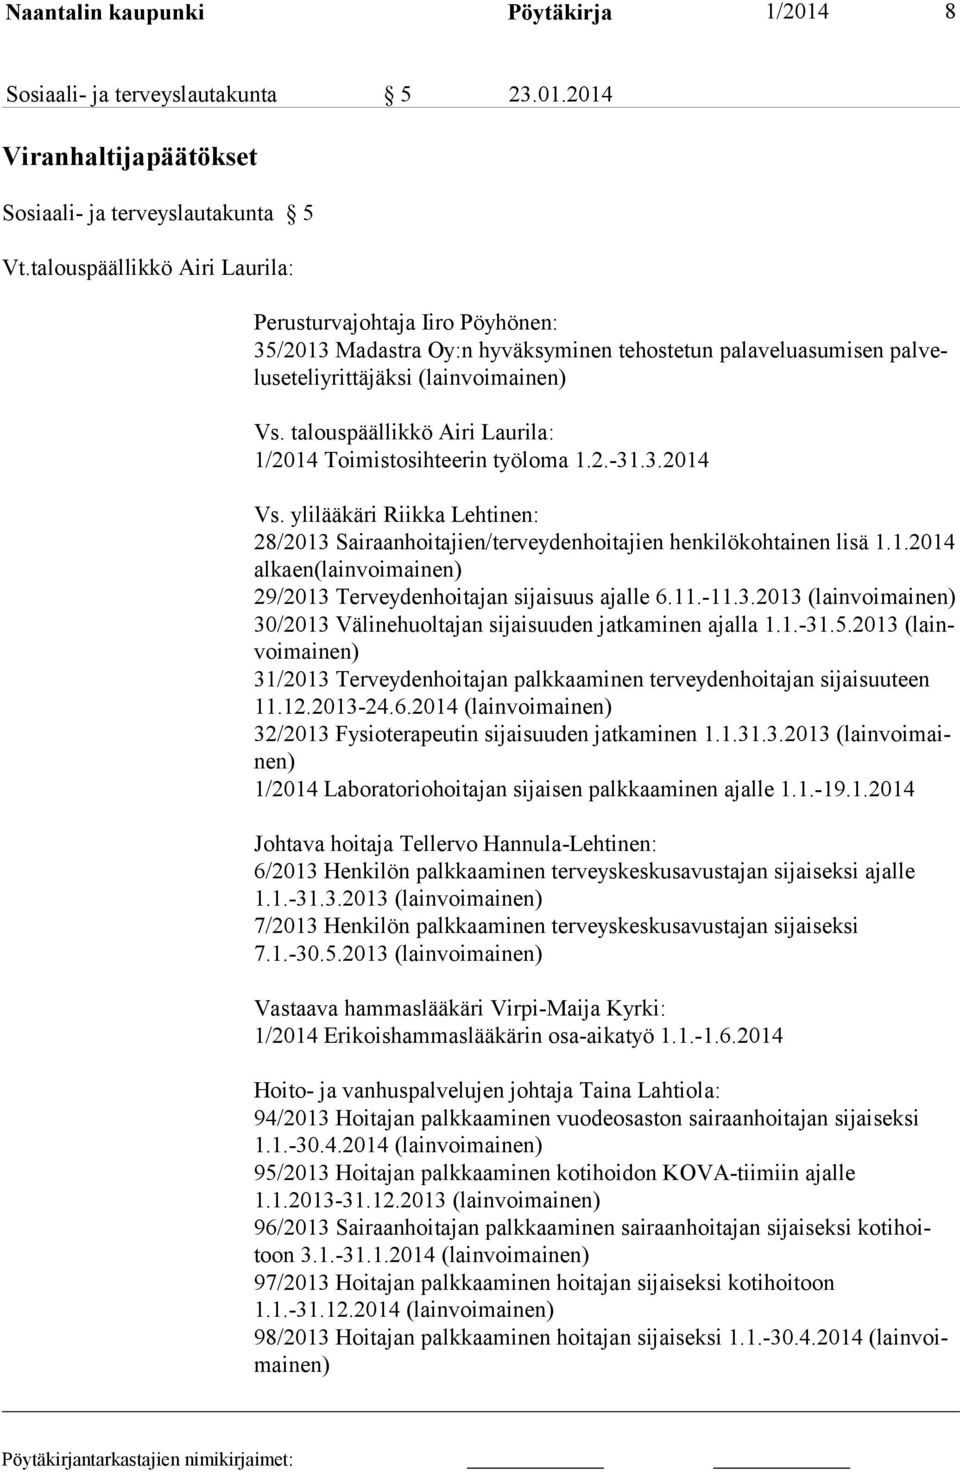 talouspäällikkö Airi Laurila: 1/2014 Toimistosihteerin työloma 1.2.-31.3.2014 Vs. ylilääkäri Riikka Lehtinen: 28/2013 Sairaanhoitajien/terveydenhoitajien henkilökohtainen lisä 1.1.2014 alkaen(lainvoimainen) 29/2013 Terveydenhoitajan sijaisuus ajalle 6.